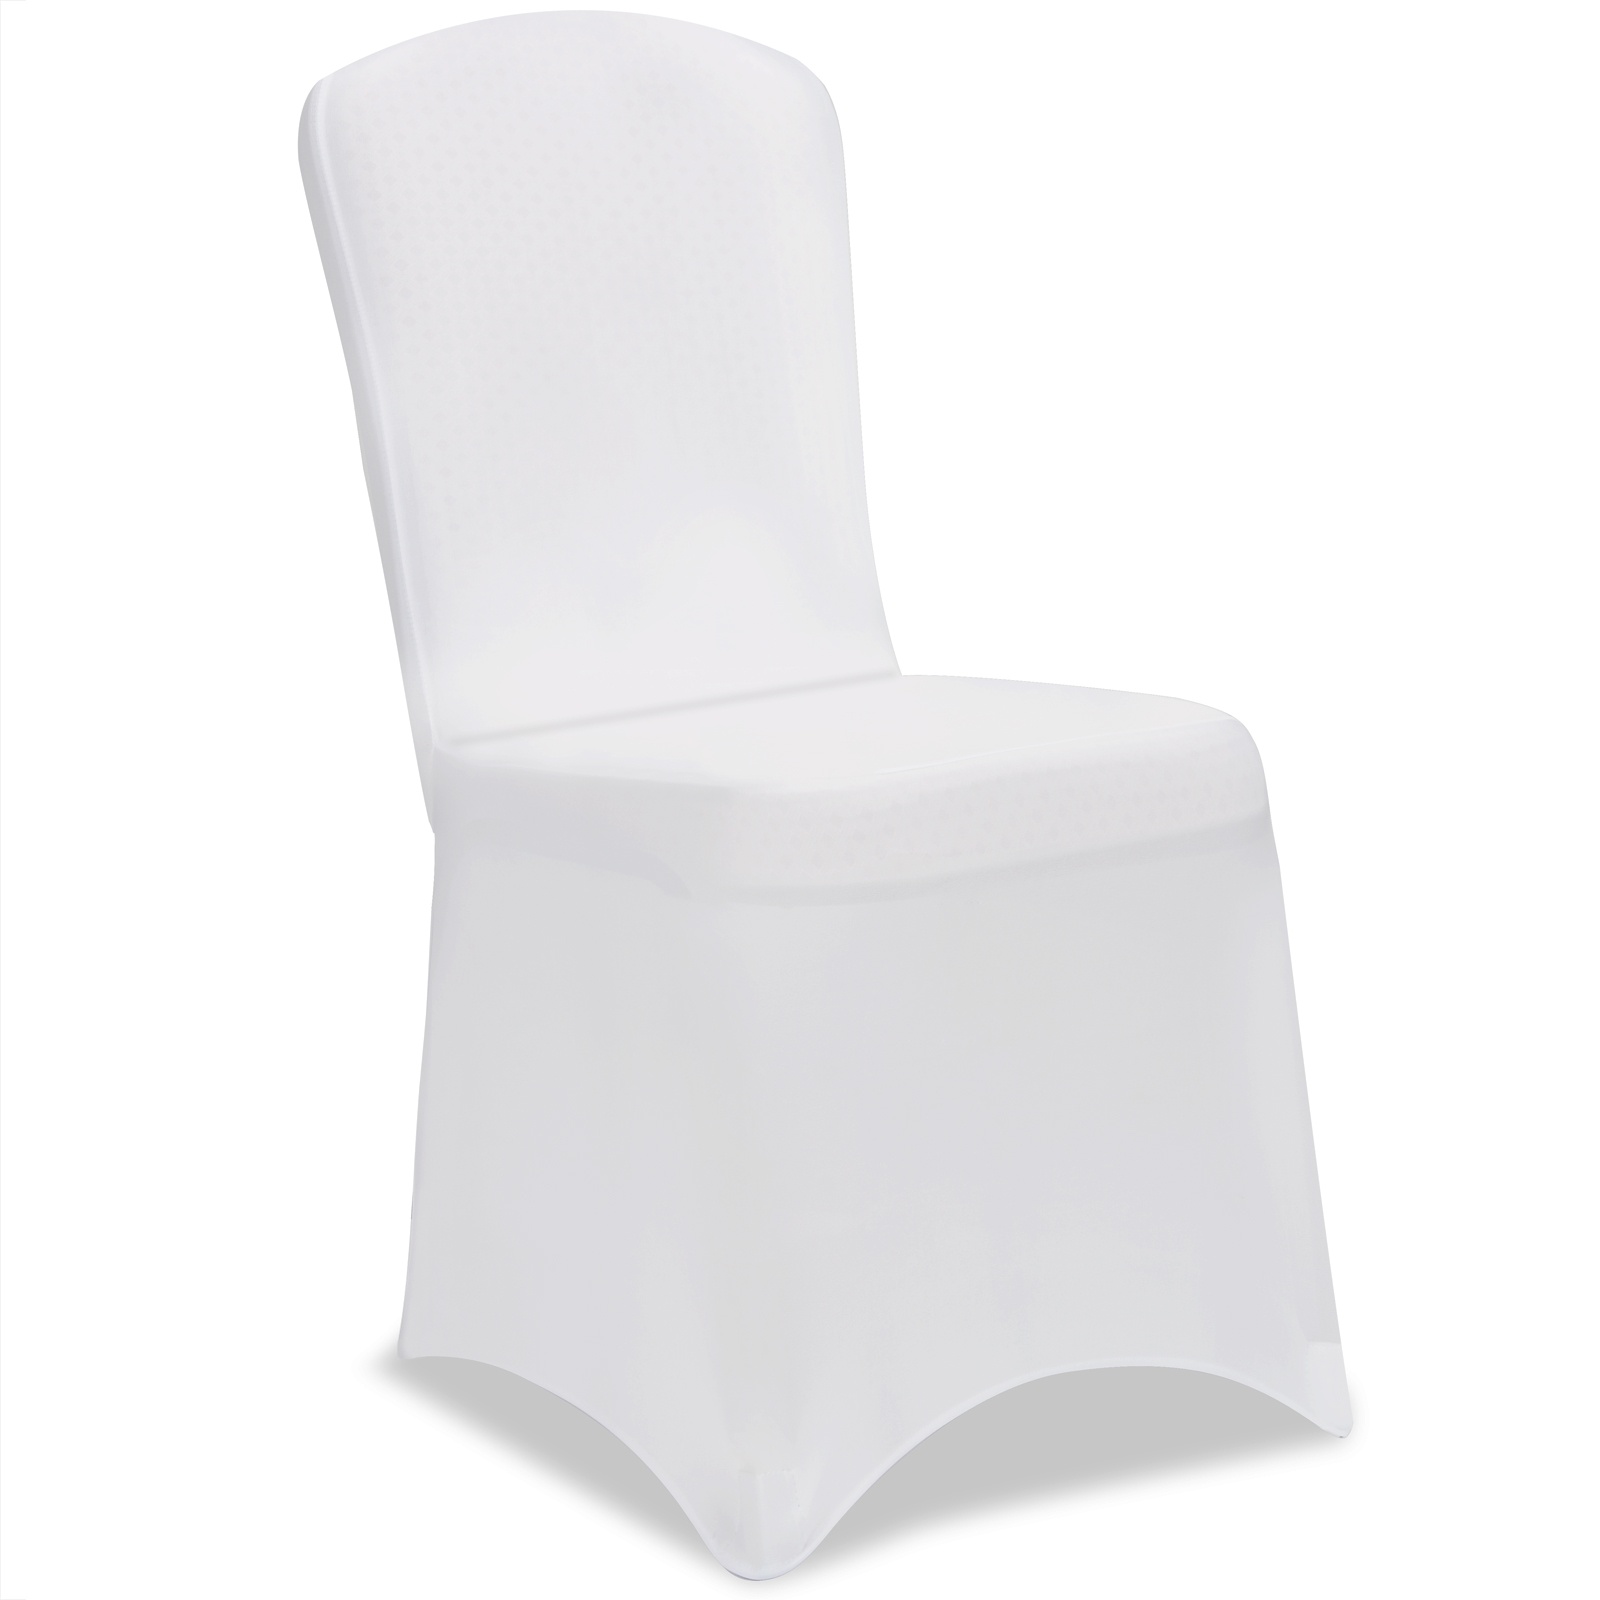 Husa elastica pentru scaun, Alb Alb